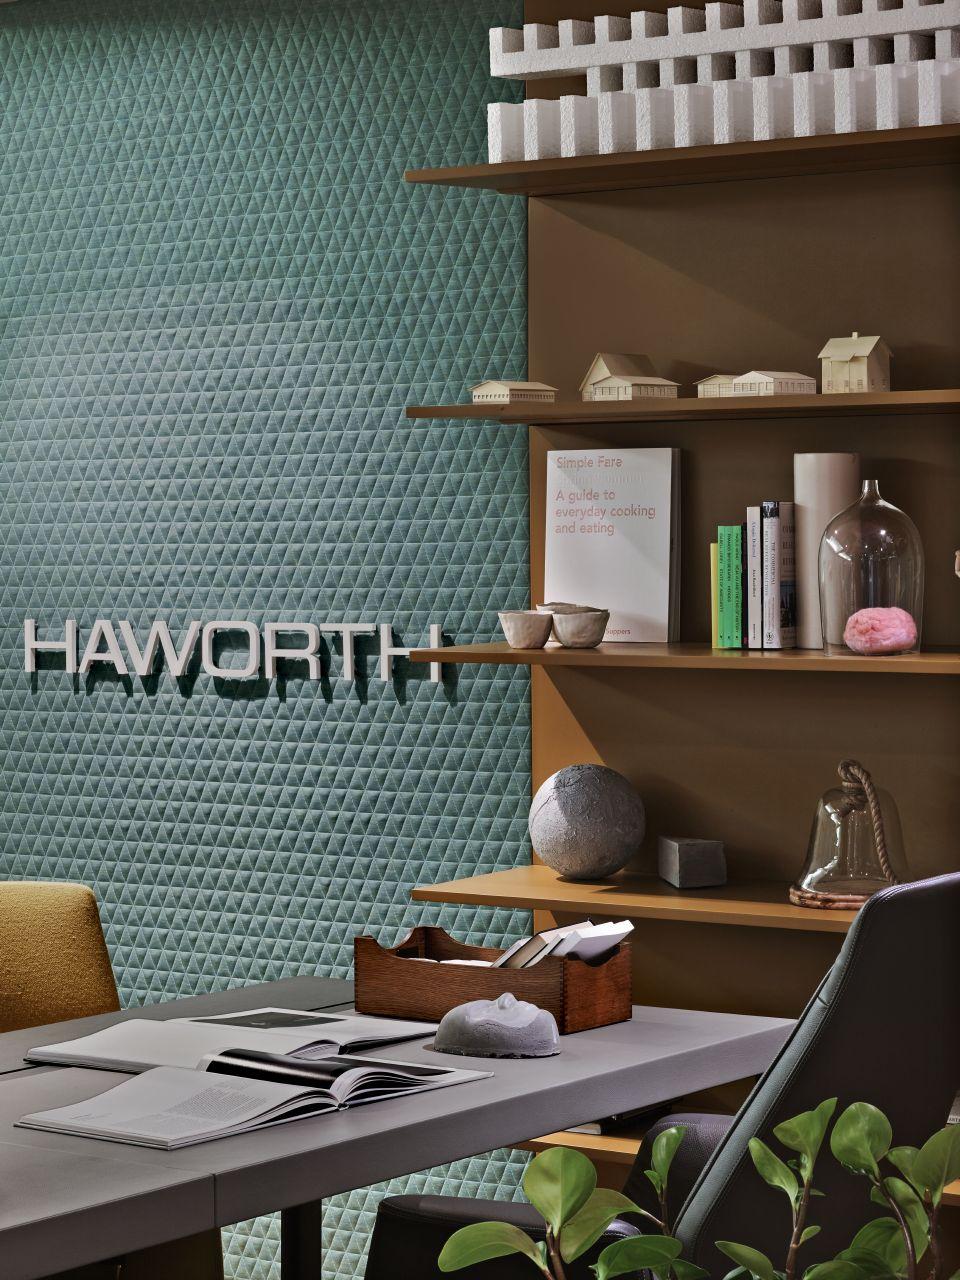 Haworth verkleinert sich in Deutschland bis zum 2. Quartal 2022. Abbildung: Haworth